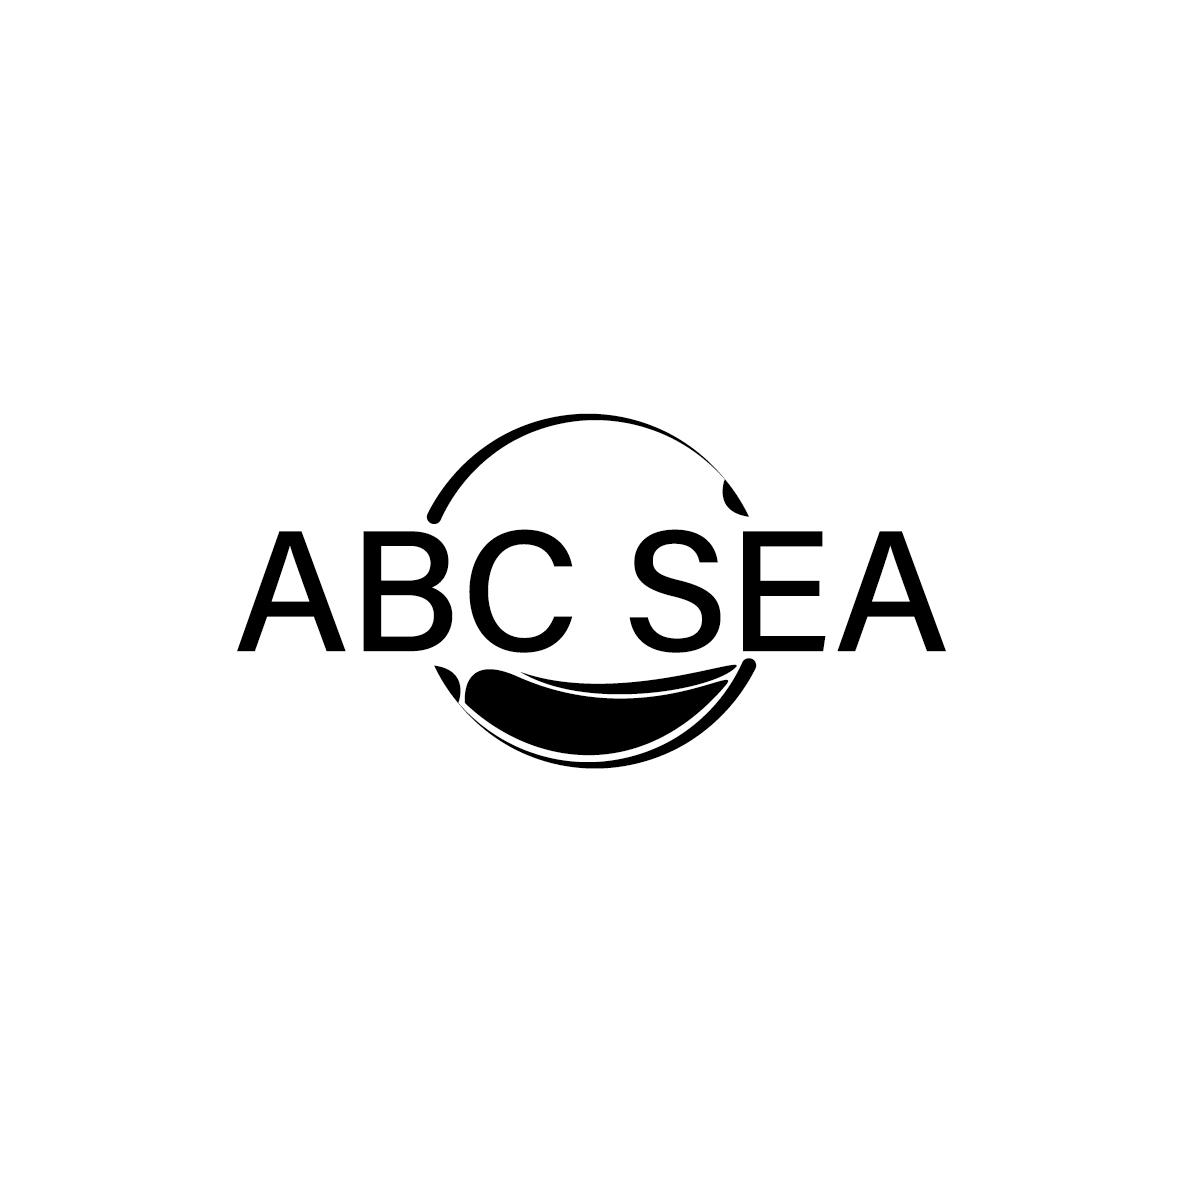 ABC SEA